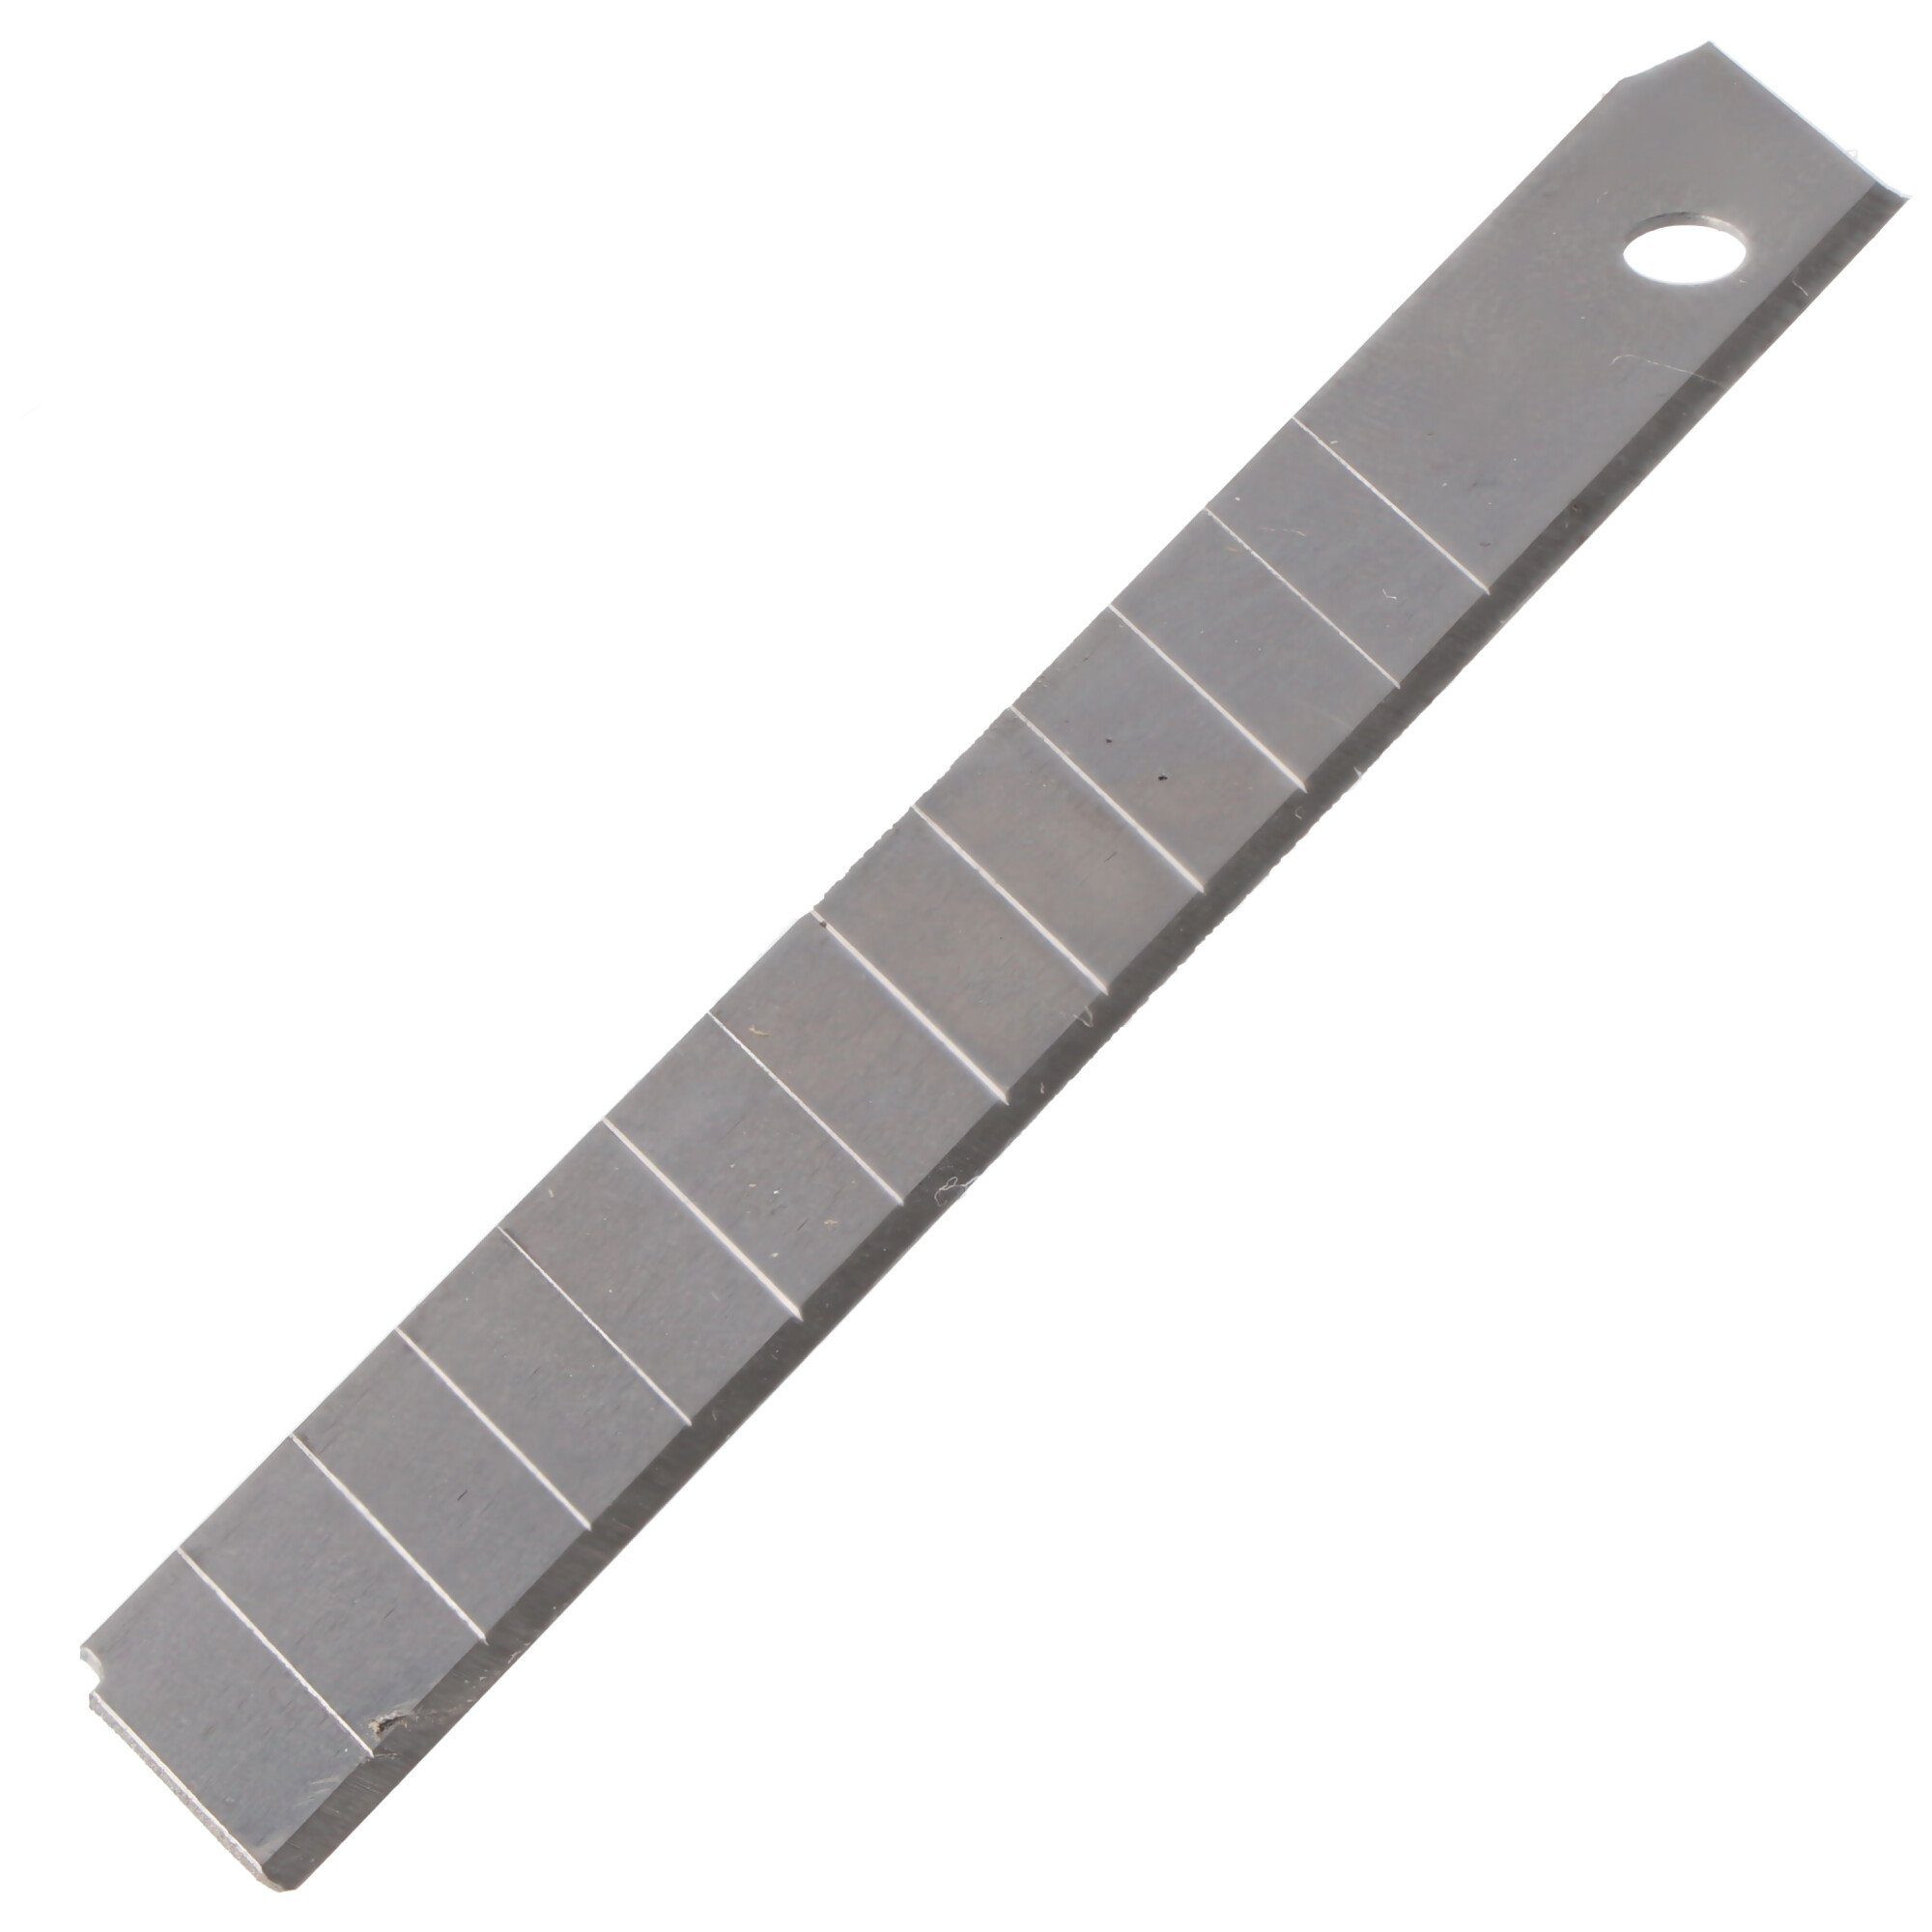 WEDO Cuttermesser Cutter-Abbrechklingen 9mm, Ersatzklingen für fast alle handelsübliche